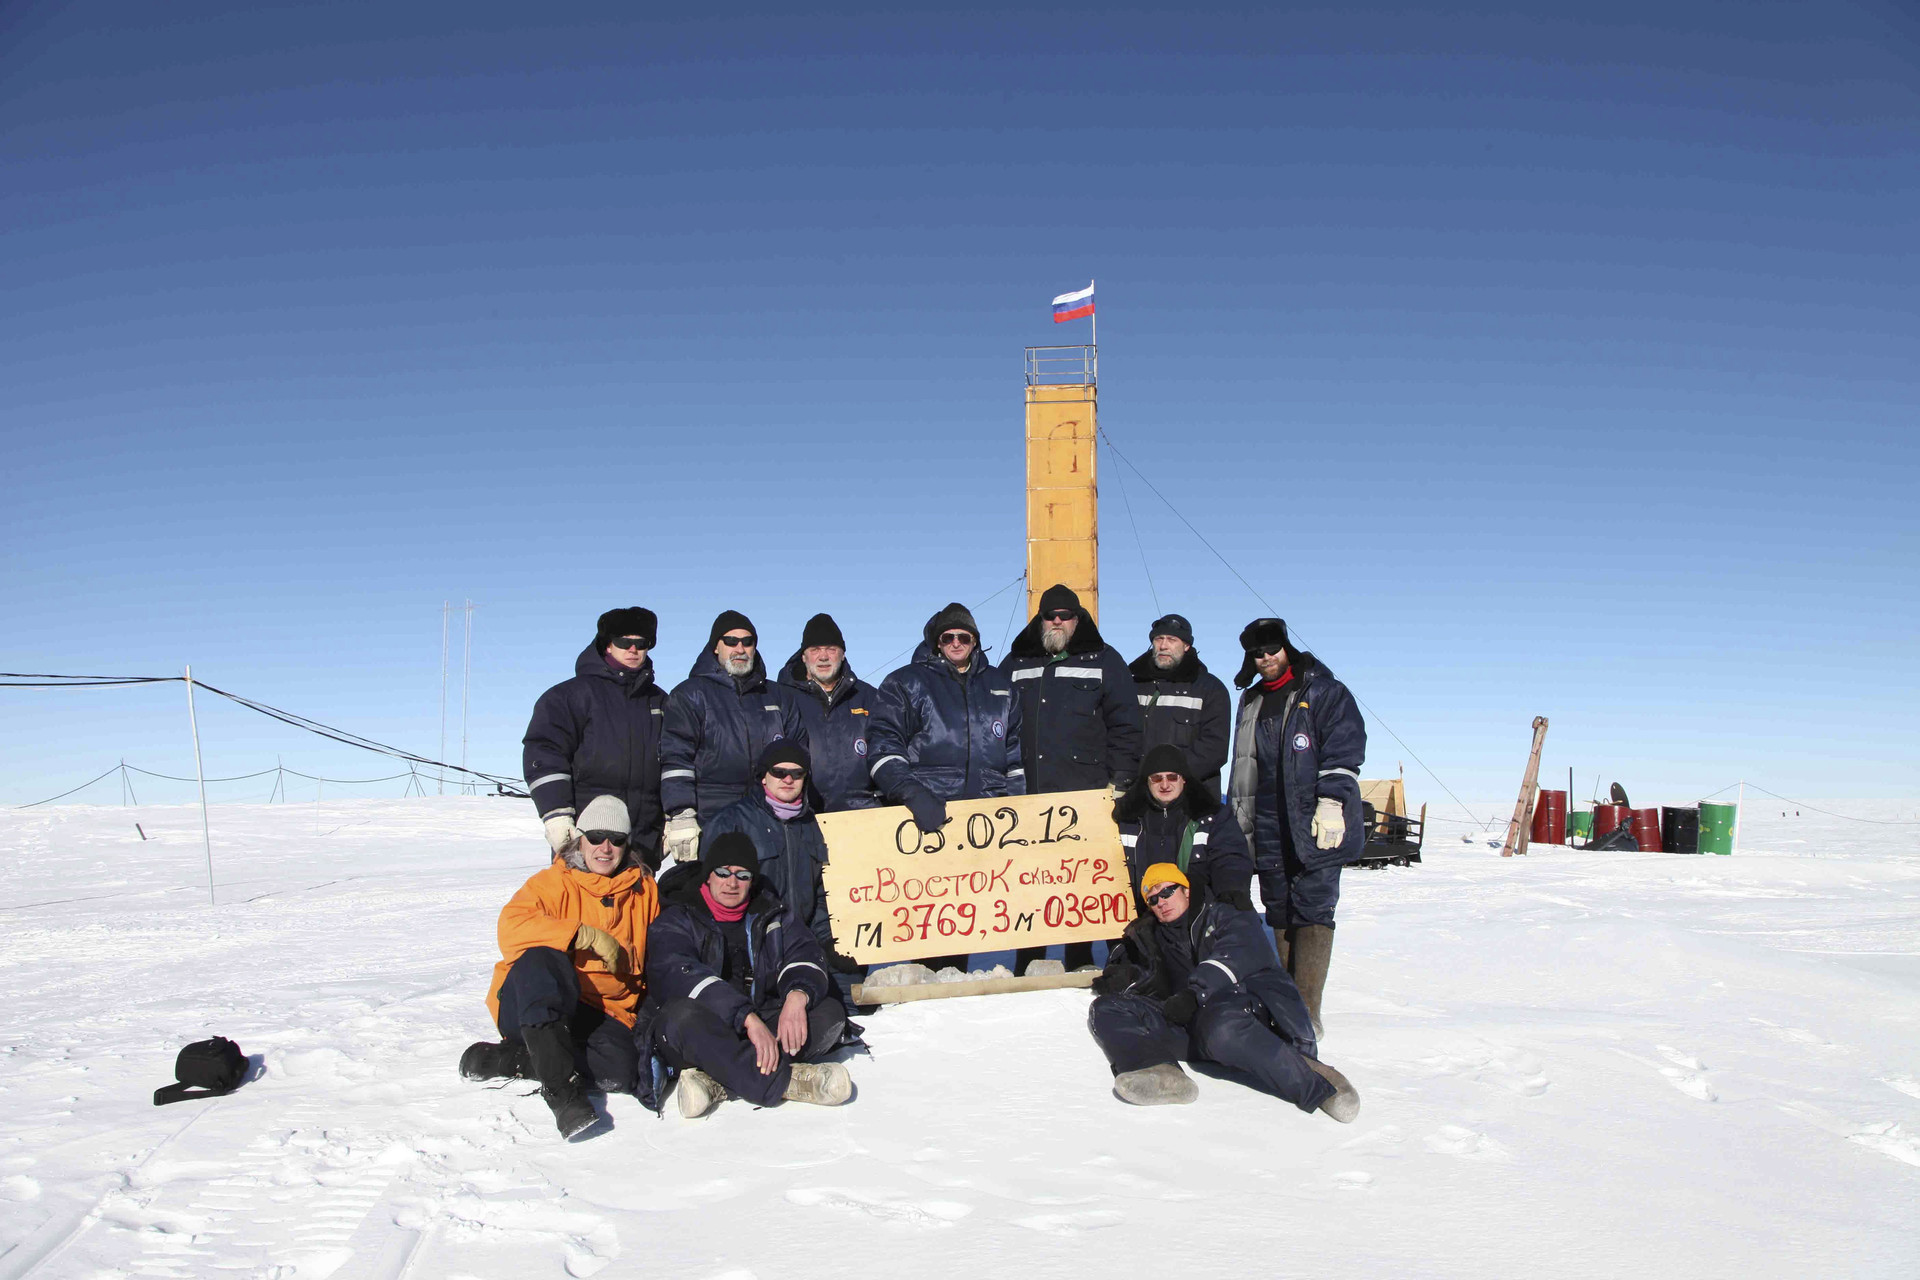 Des chercheurs posent pour une photo à la station Vostok en Antarctique